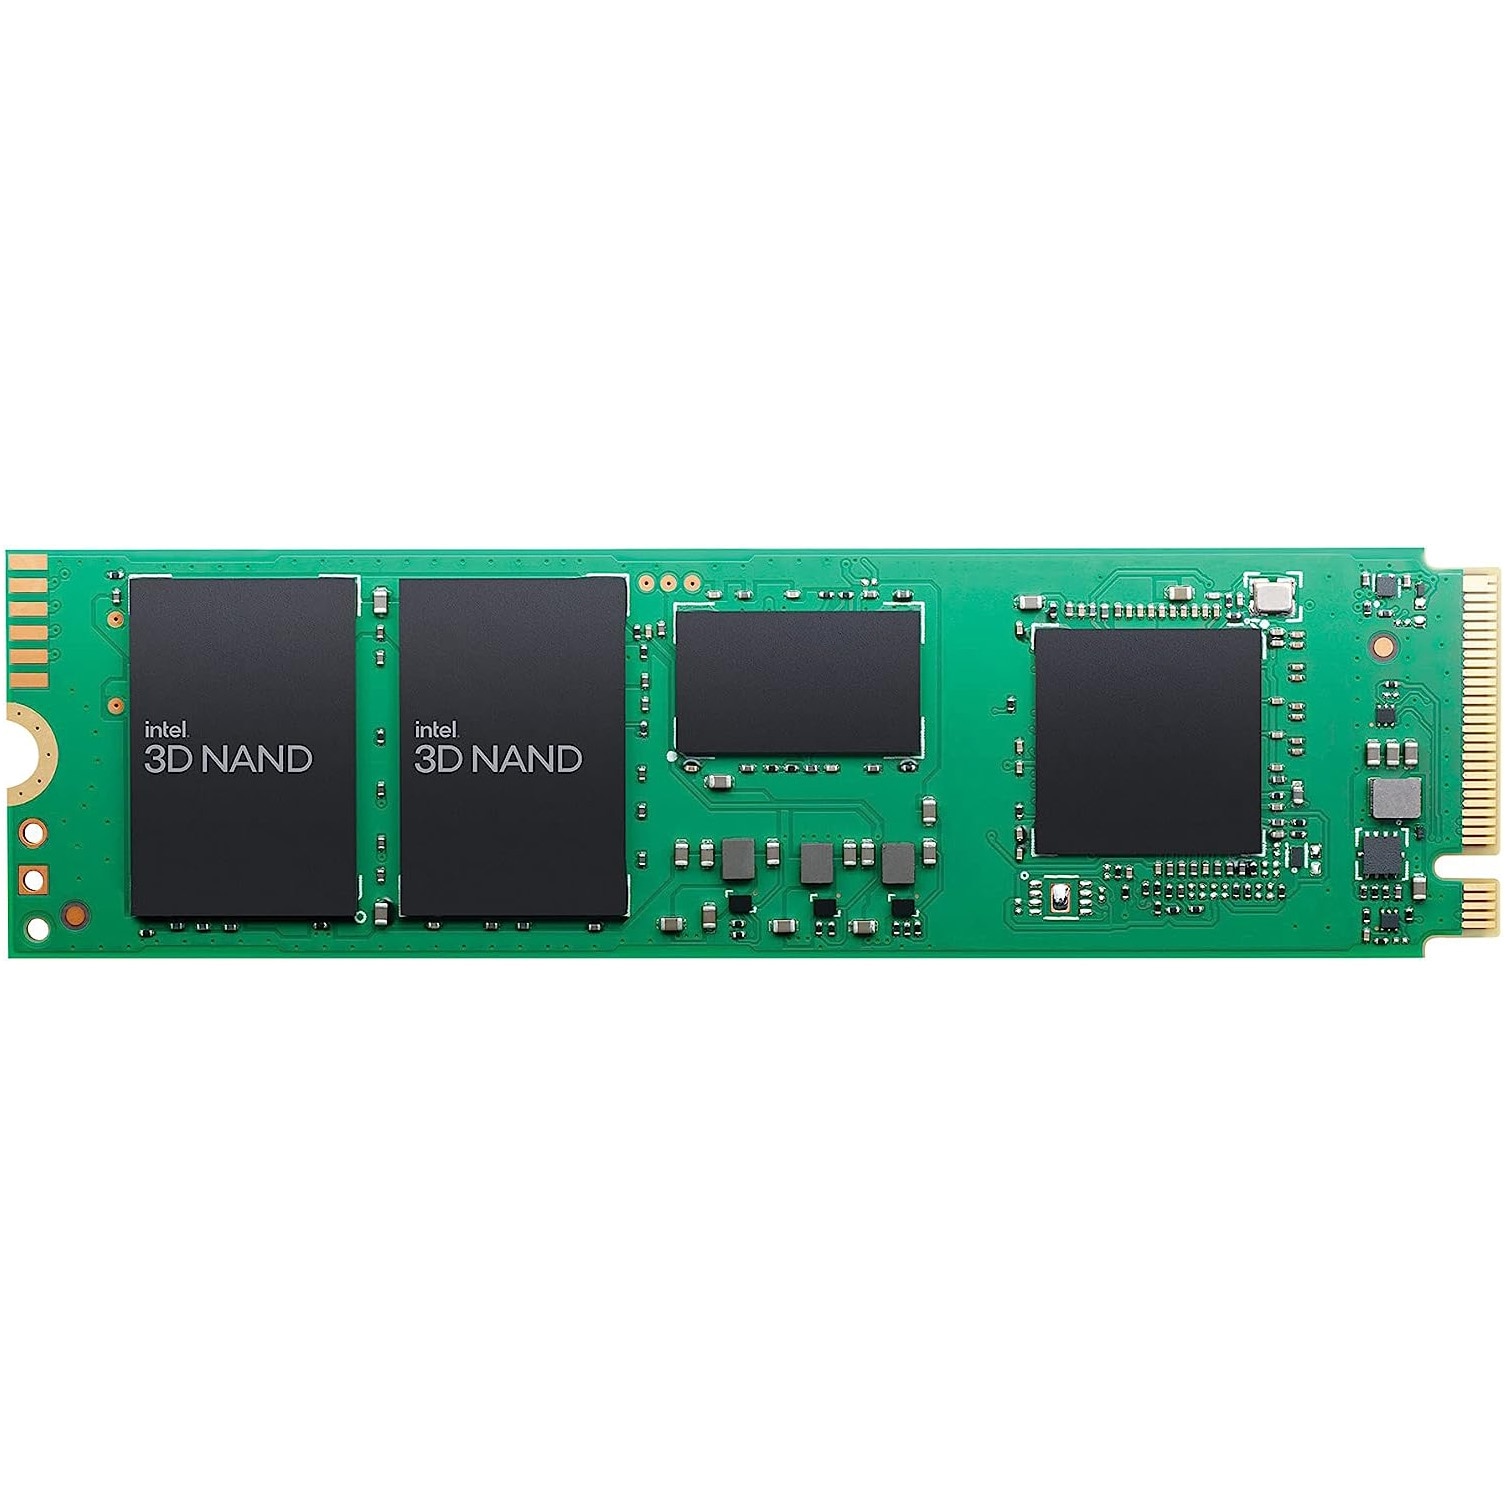 Fotografie Solid-State Drive (SSD) Intel 670p, 512GB, M.2 PCIe 3.0 x4